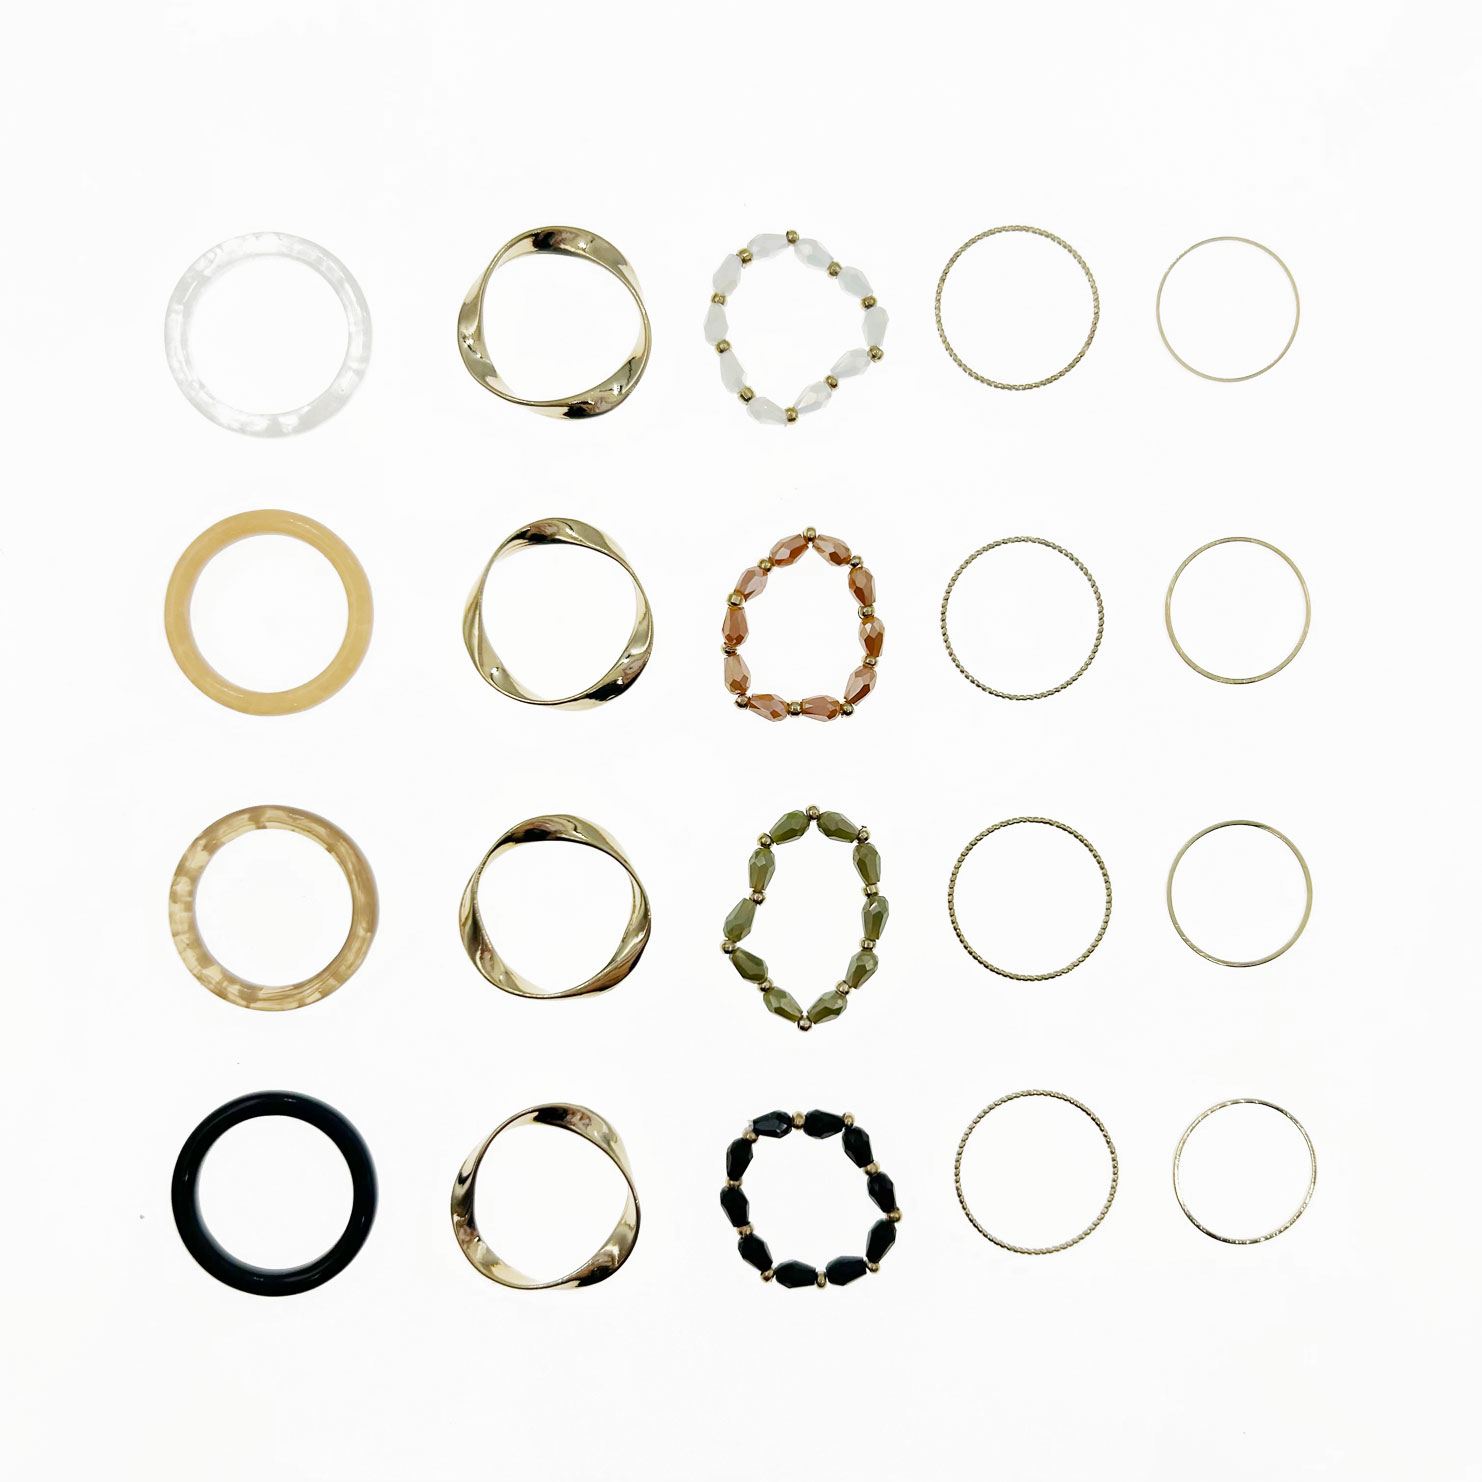 韓國 金屬 水晶 一組五入 四色 搭配 精緻 彈性繩 戒指